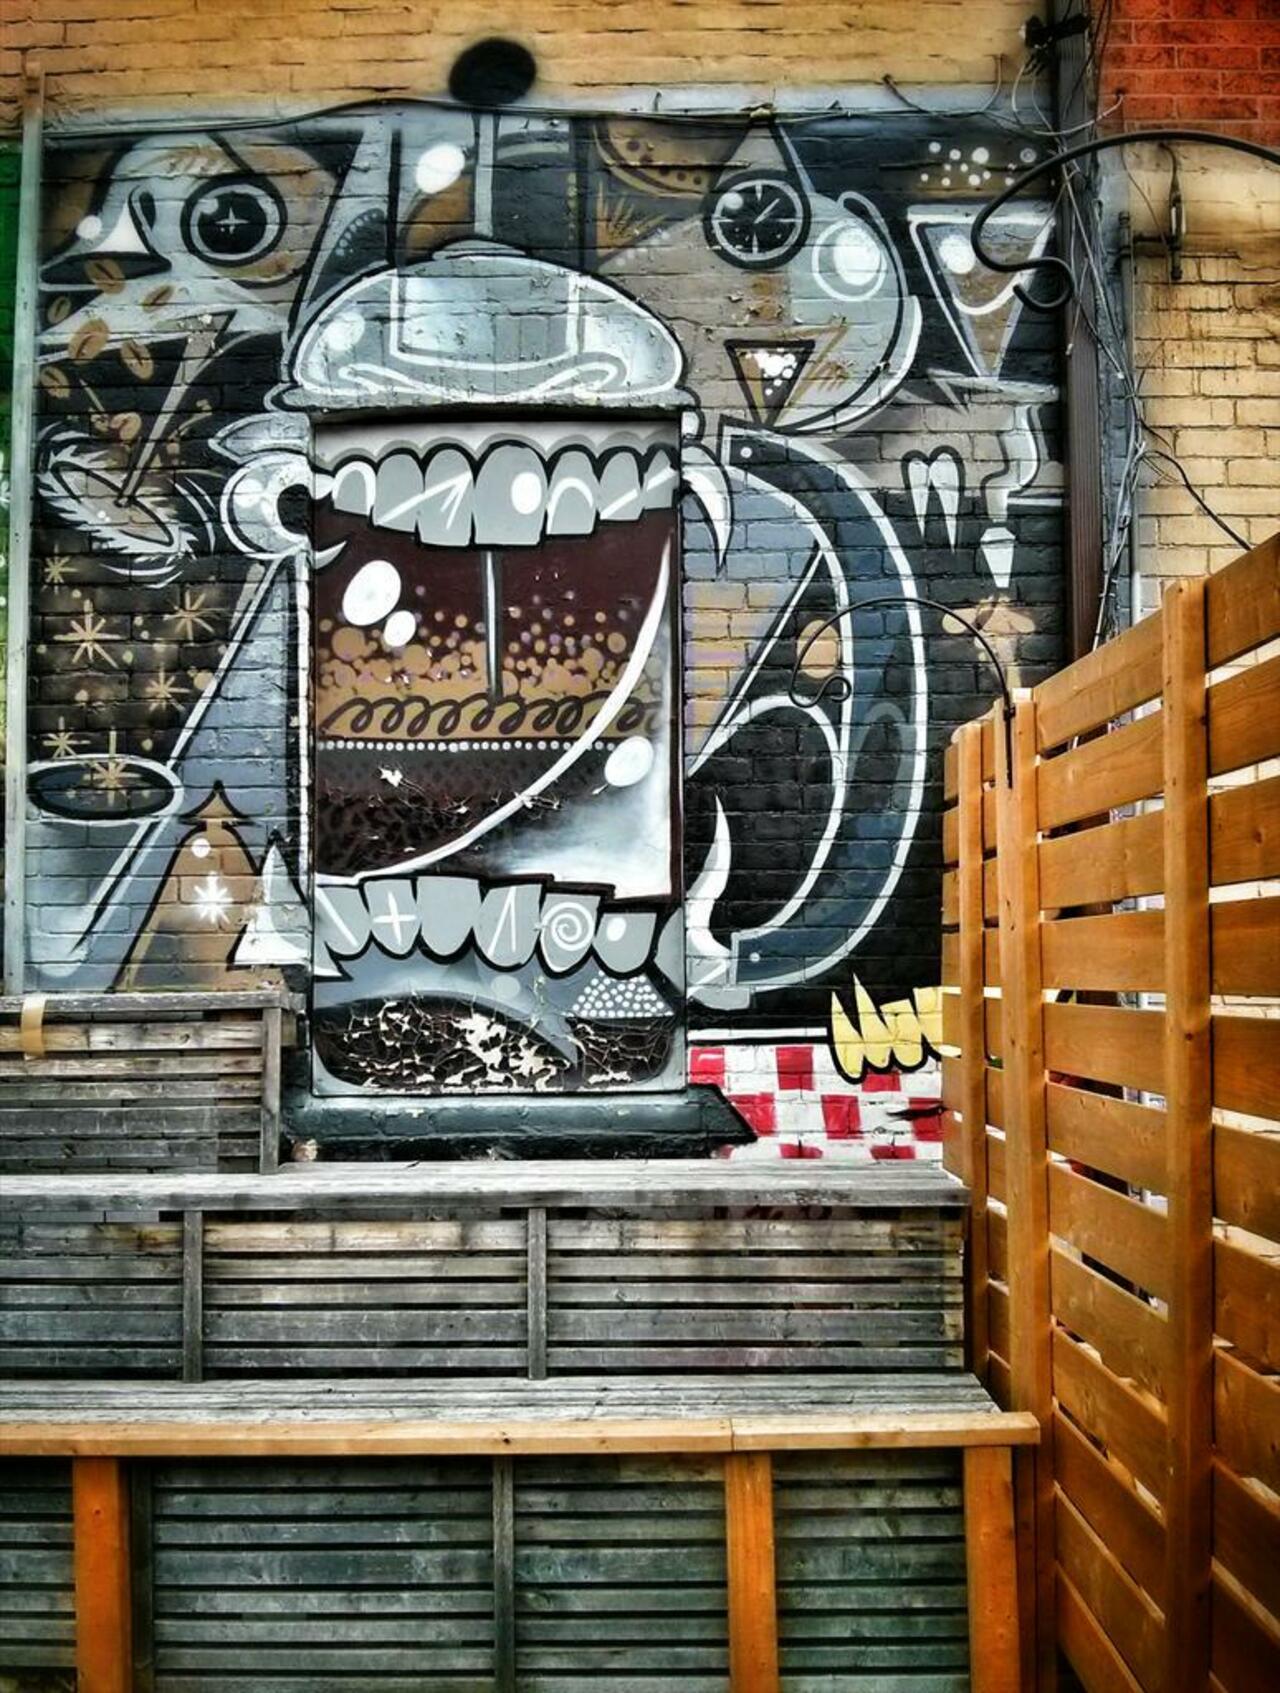 French press monster, Toronto.
#graffiti #streetart #urbanart http://t.co/k1o8vNT1zE